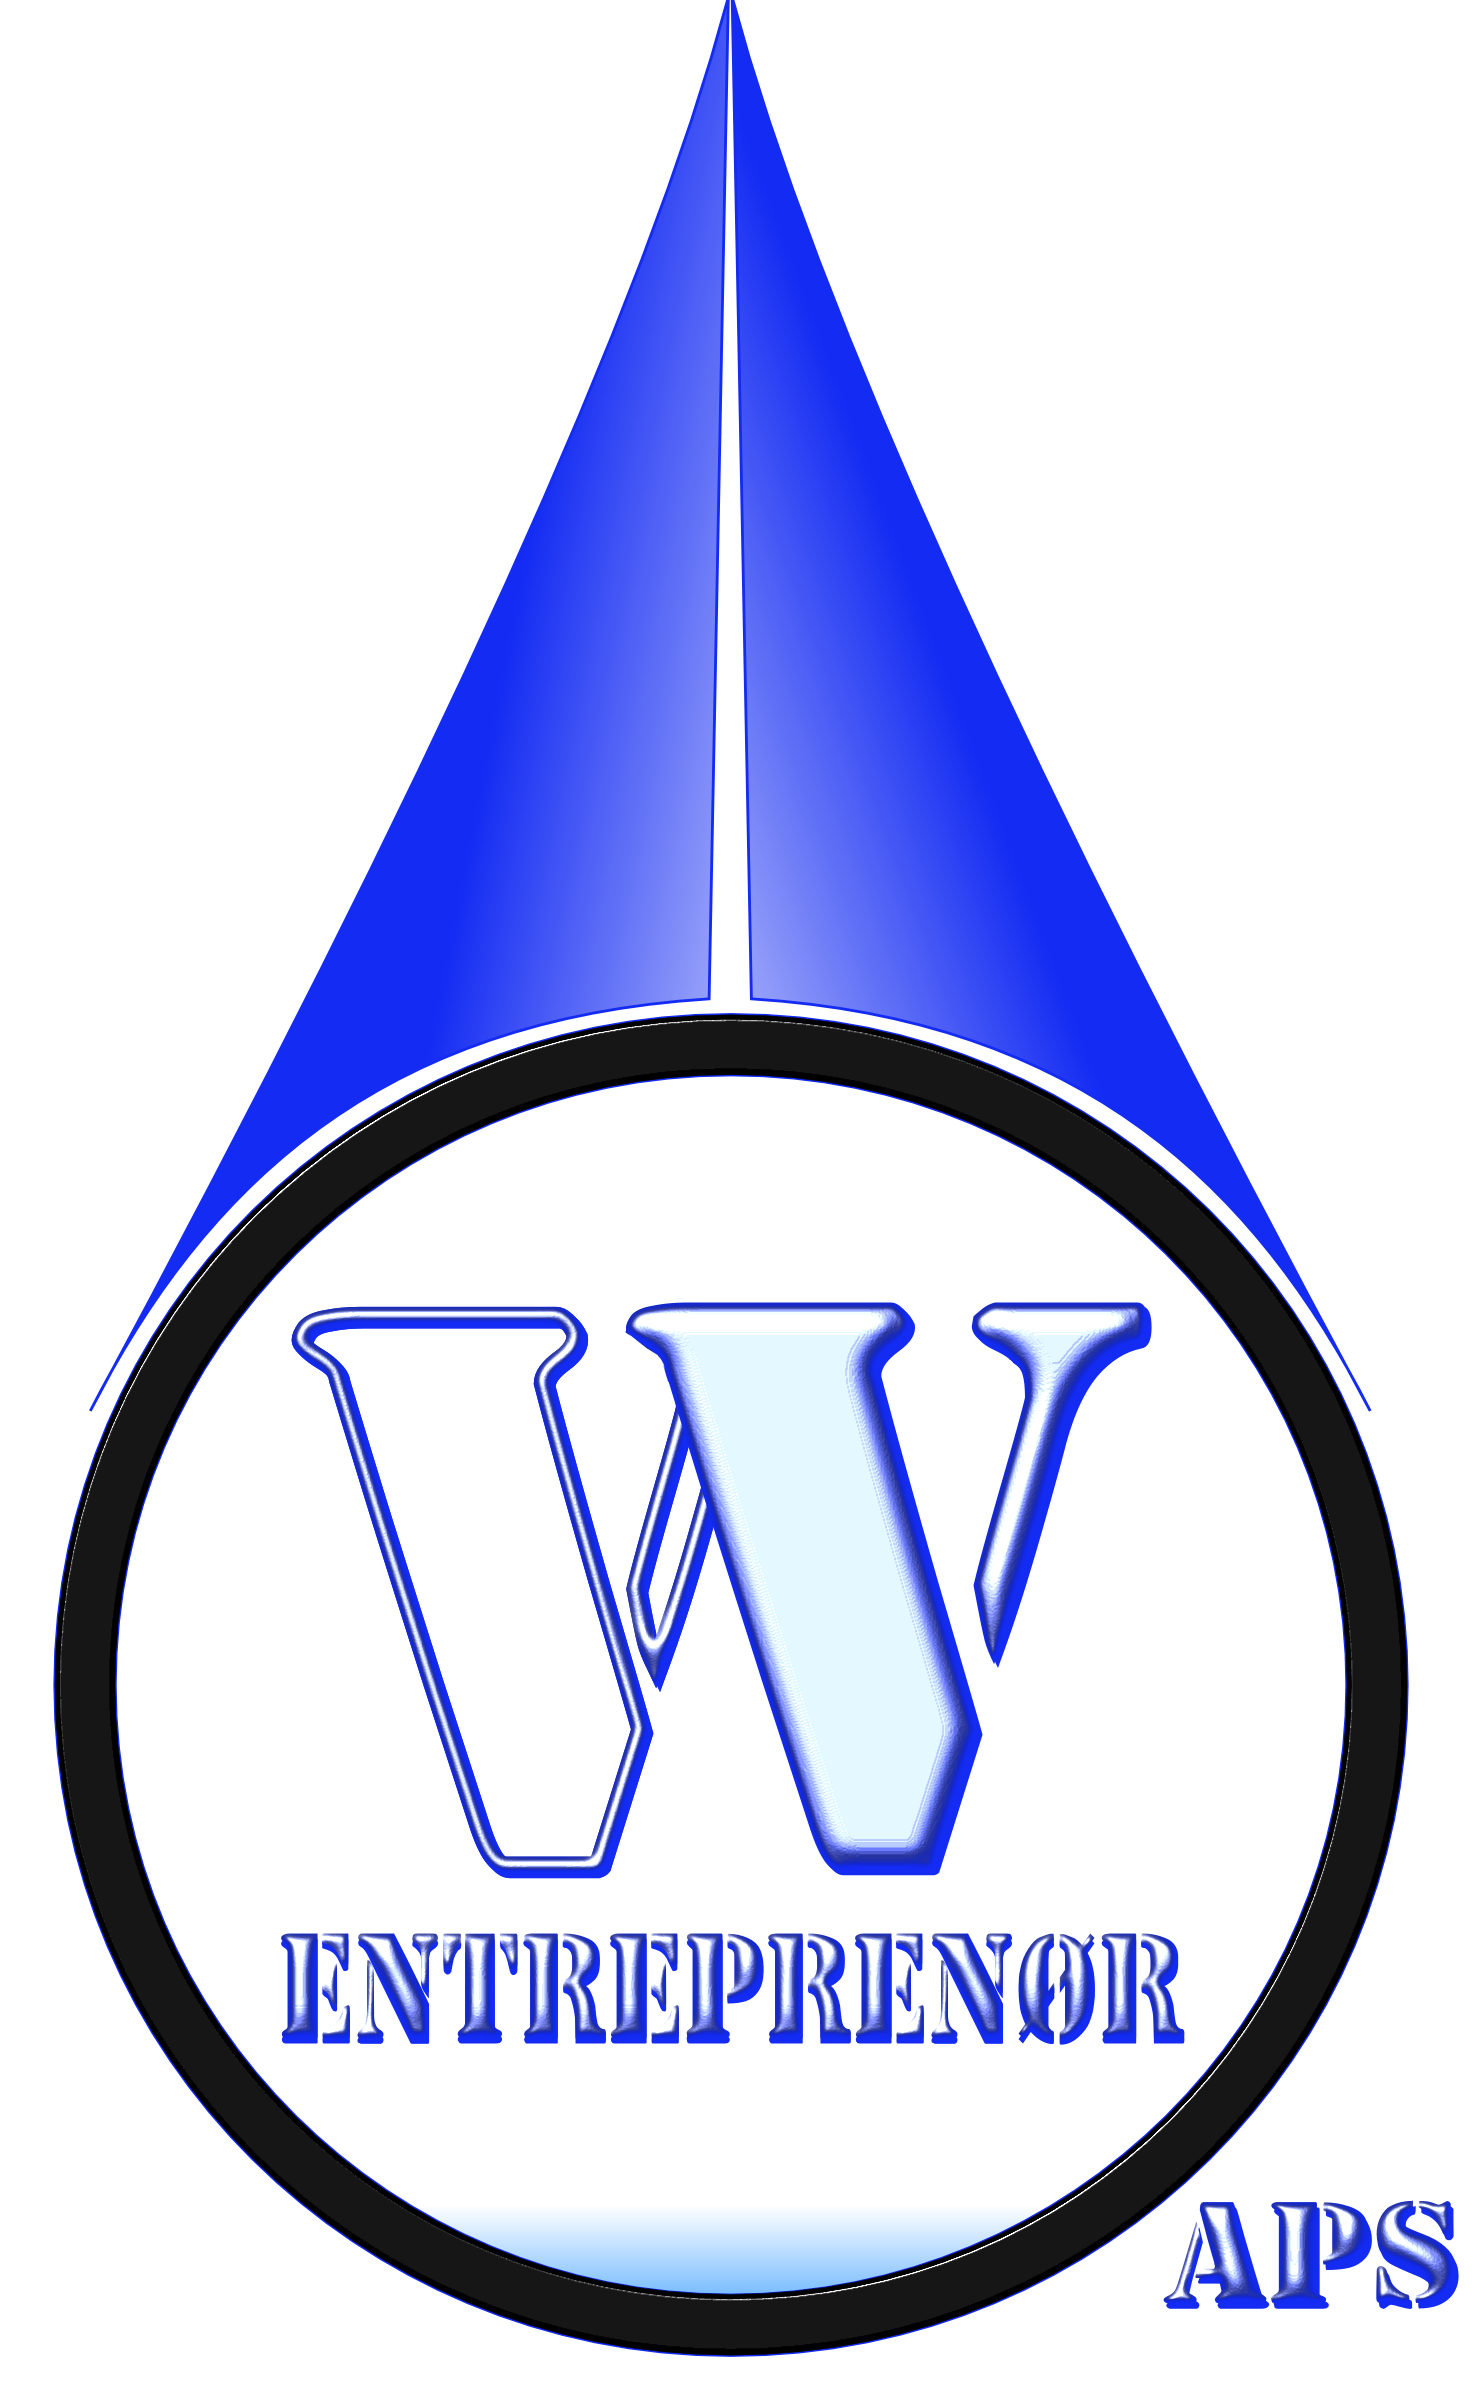 vv-logo